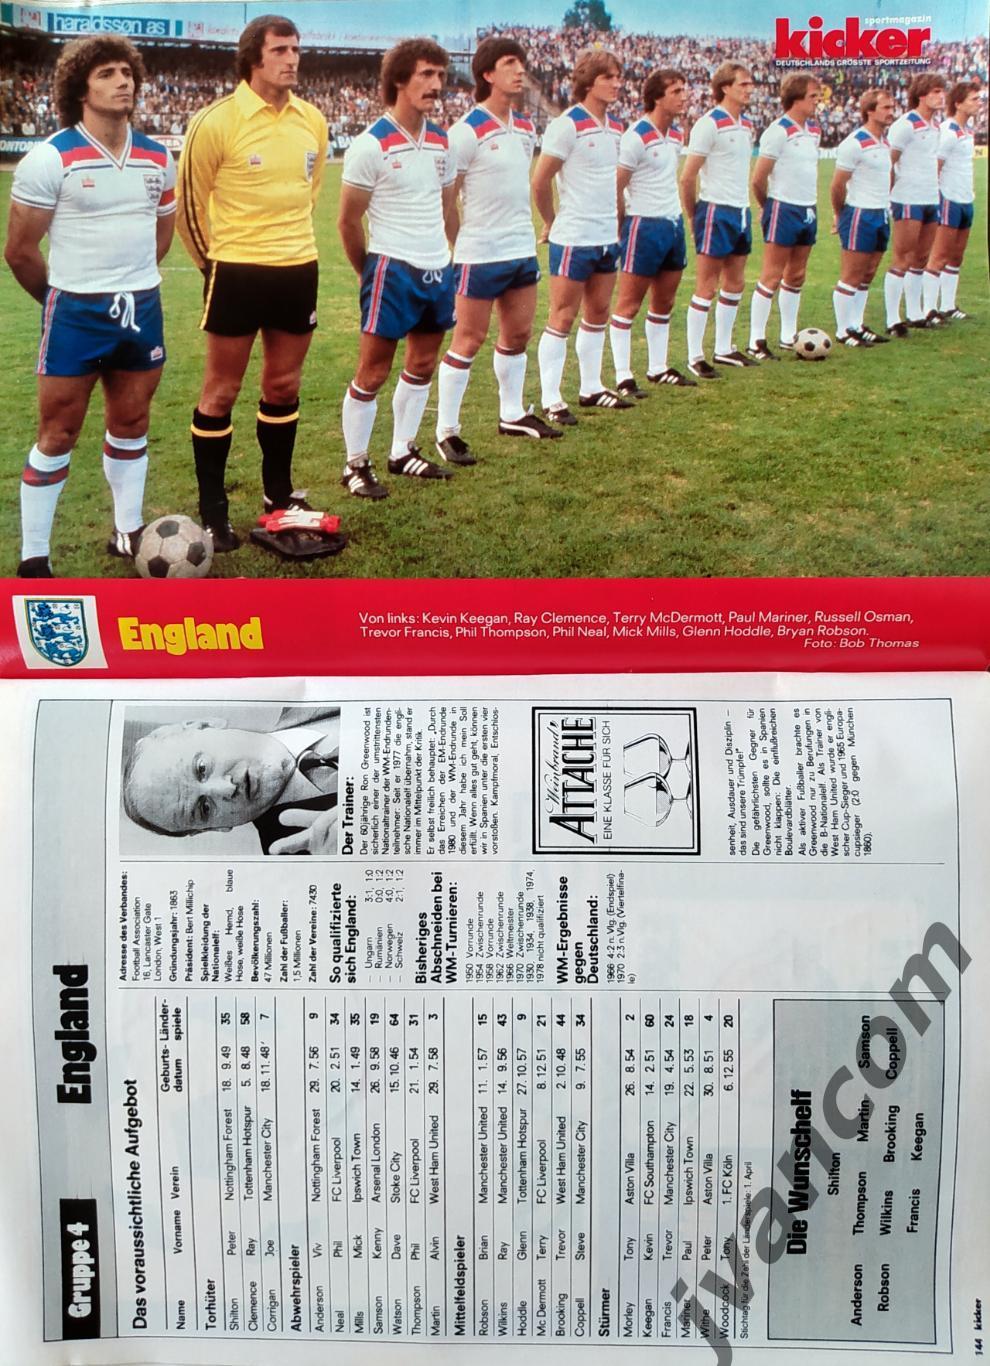 KICKER SONDERHEFT. Чемпионат Мира по футболу 1982 года. Превью участников. 5